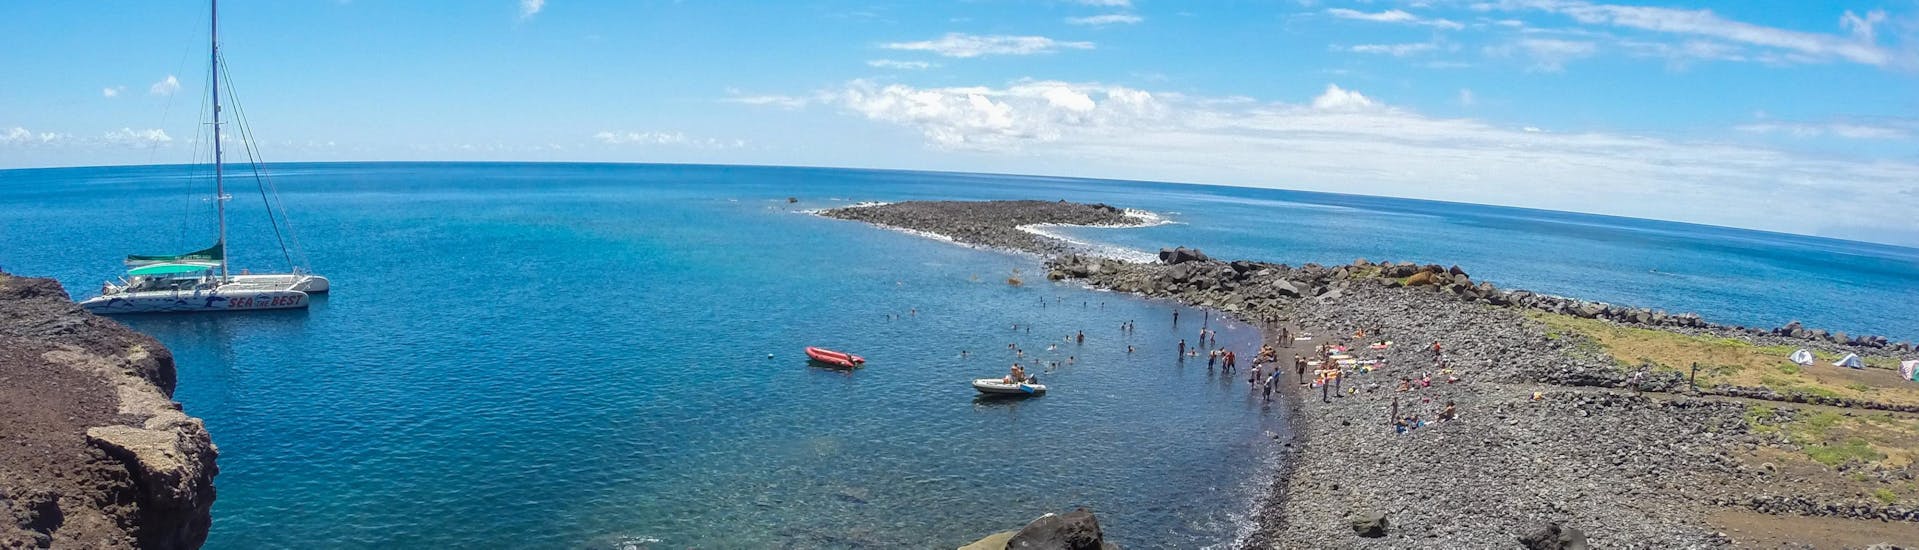 Gita in catamarano da Funchal a Isole Desertas con bagno in mare e osservazione della fauna selvatica.